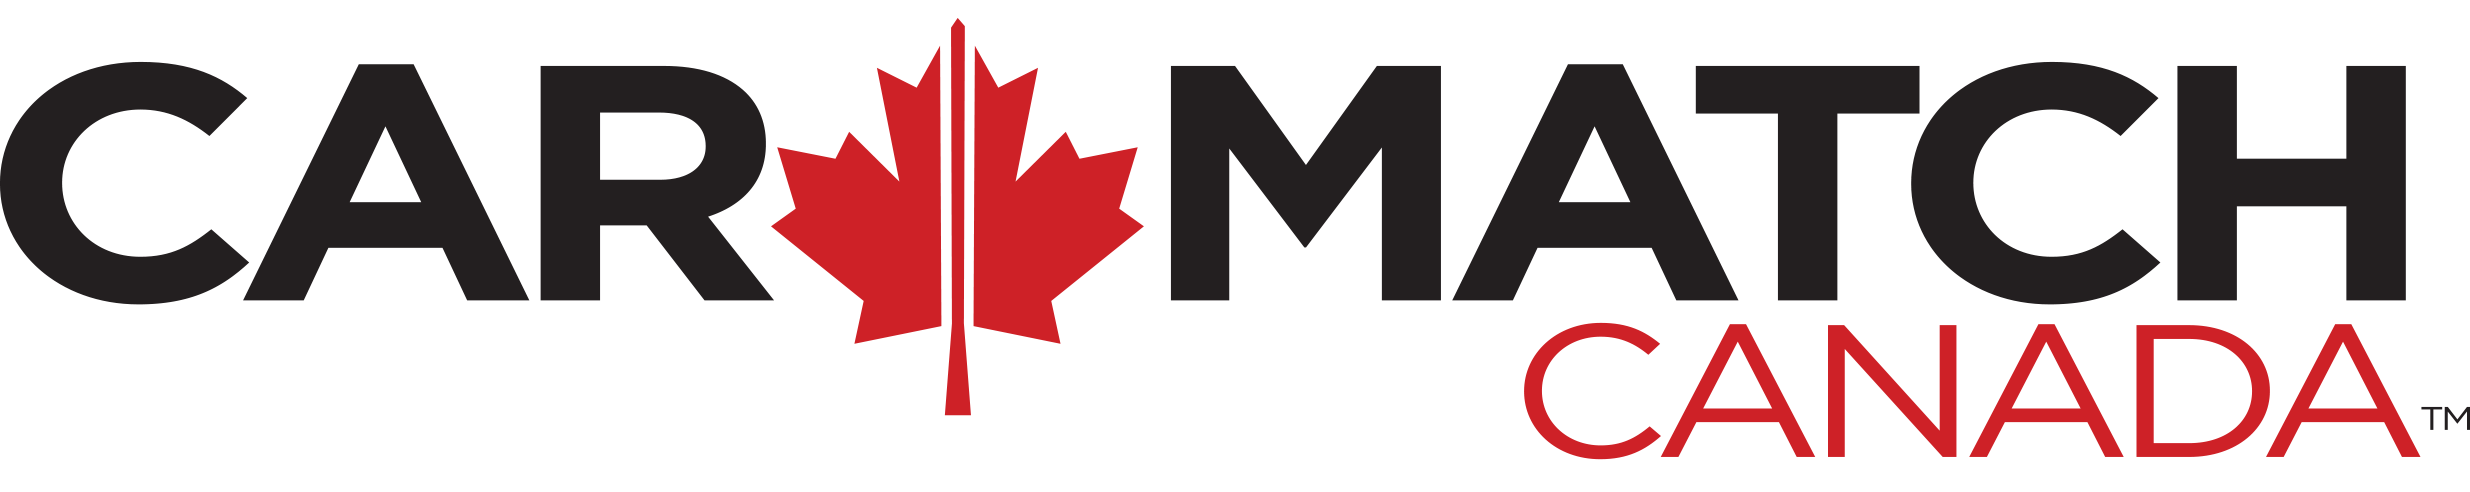 Car Match Canada logo